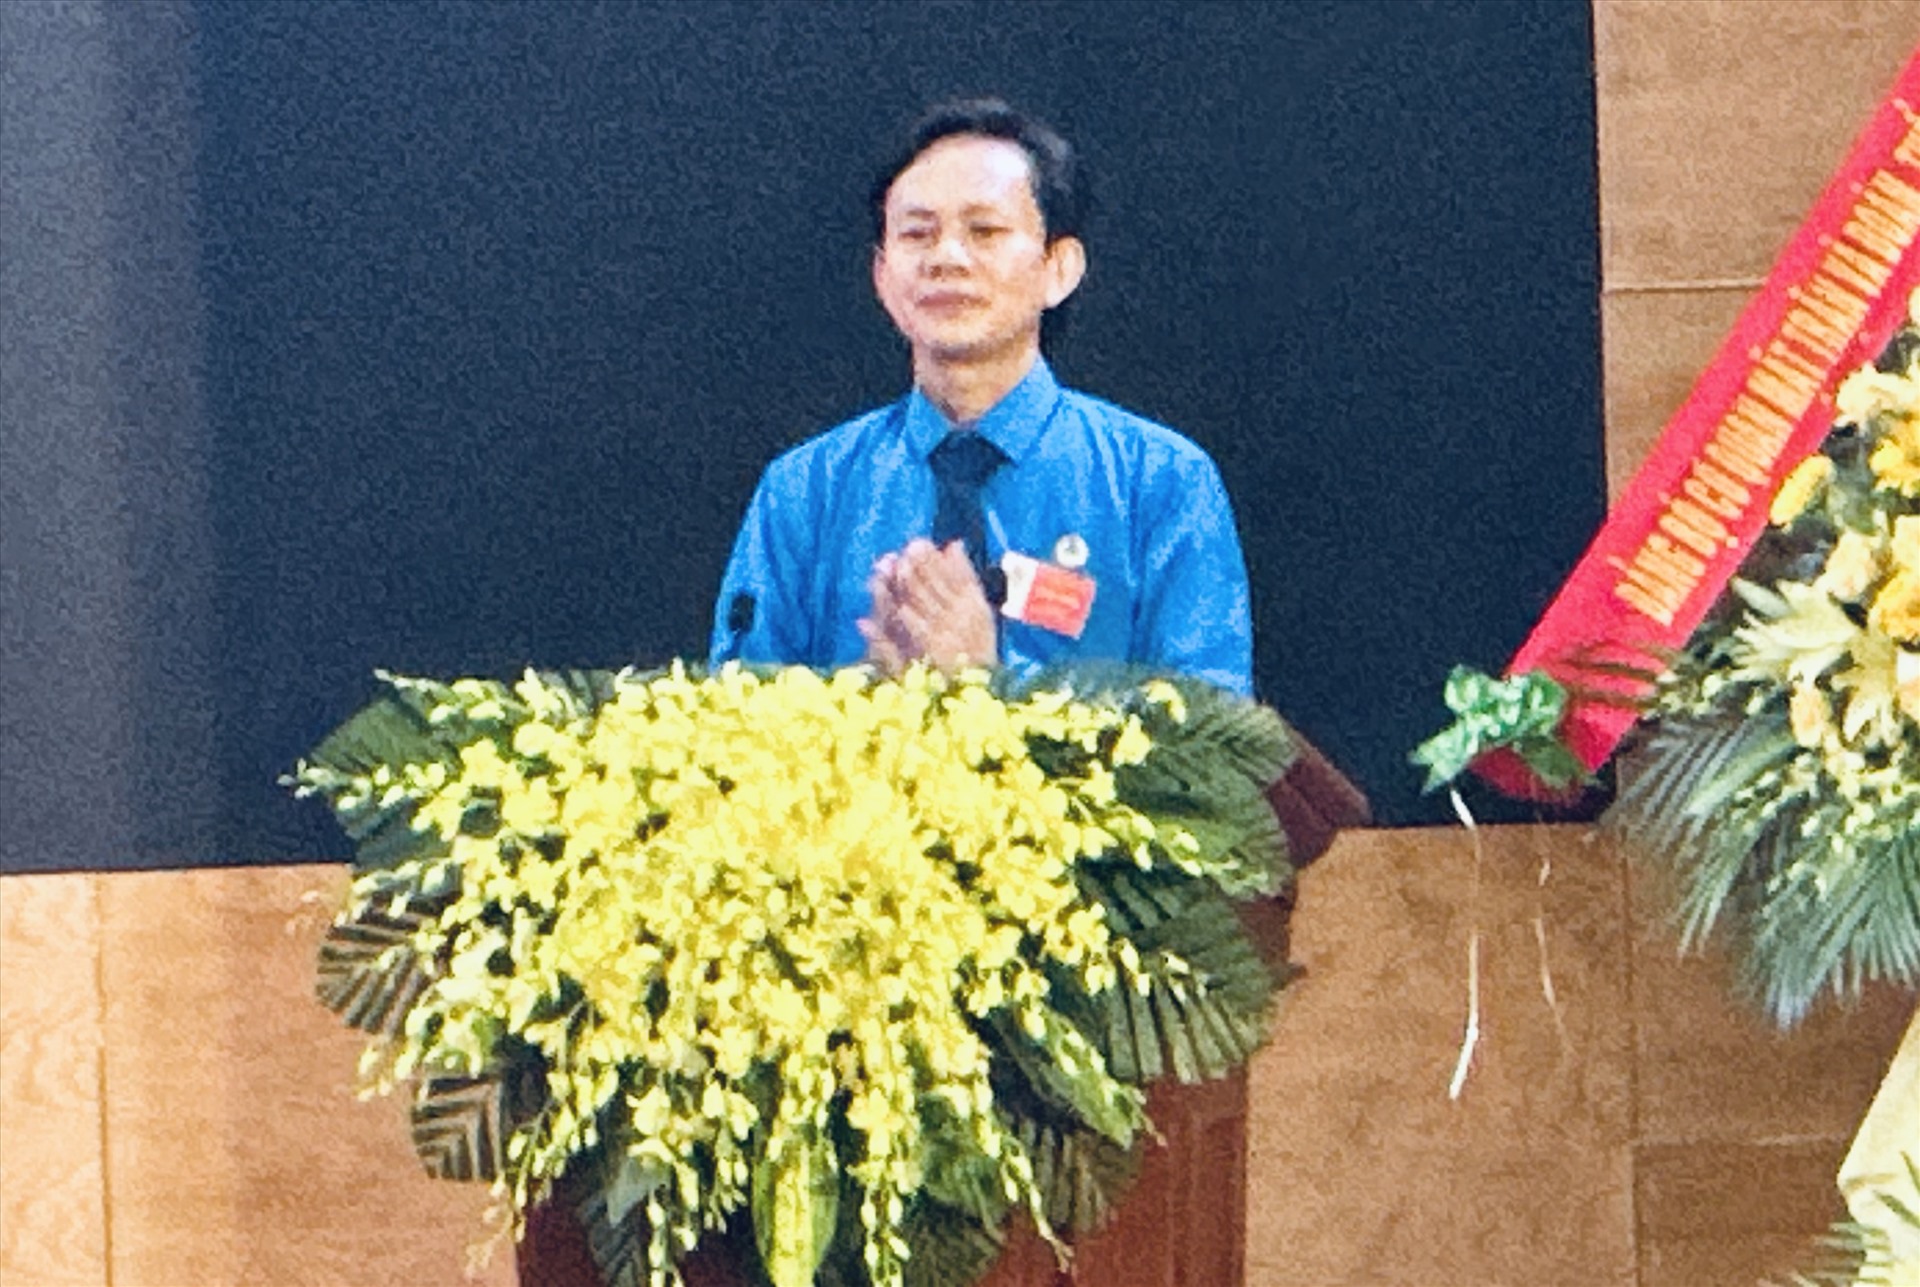 ông Trương Thanh Bình tái đắc cử chức danh Chủ tịch LĐLĐ Thành phố Đồng Hới khoá mới. Ảnh: Lê Phi Long